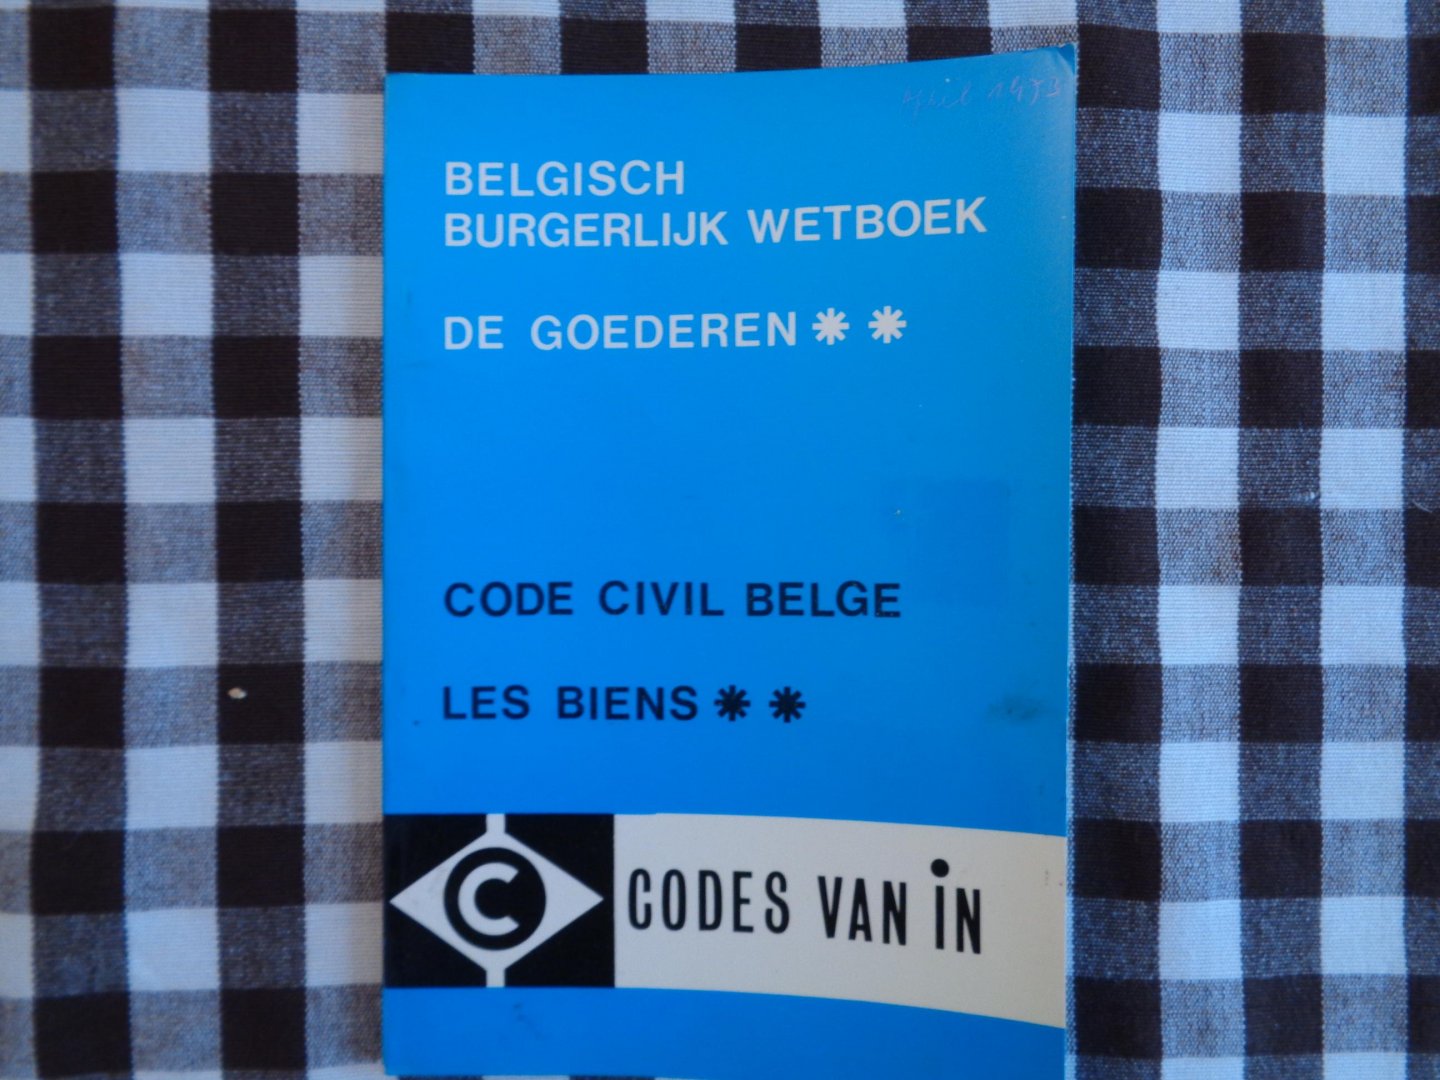 luk van gelder  karel van baarle magda claesen - belgisch burgerlijk wetboek